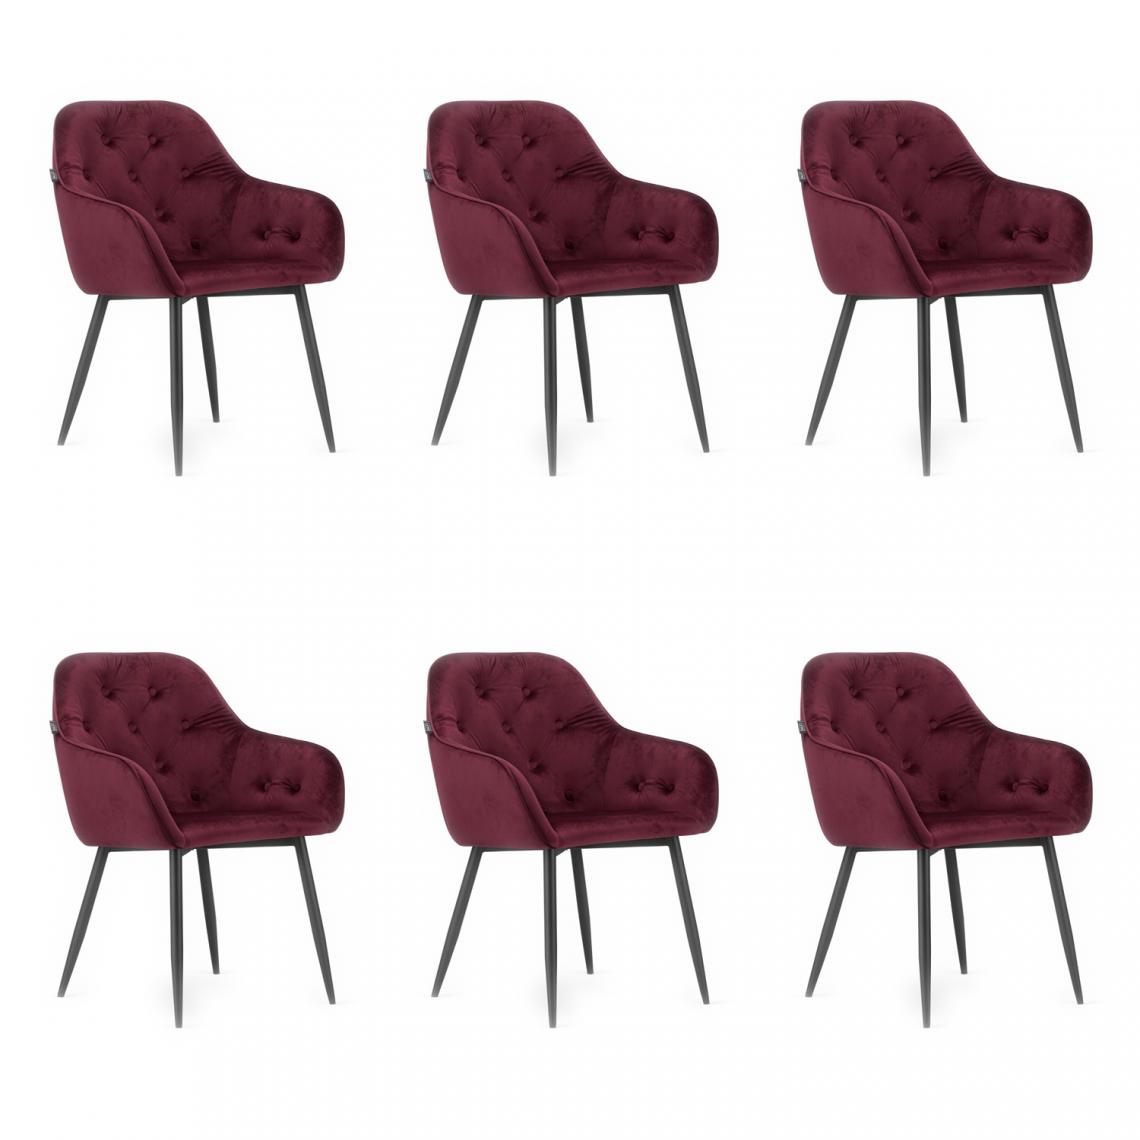 Hucoco - FORTO - Lot de 6 chaises style glamour salon/salle à manger - 81x55.5x61 cm - Fauteuil de table en velours - Rouge - Chaises